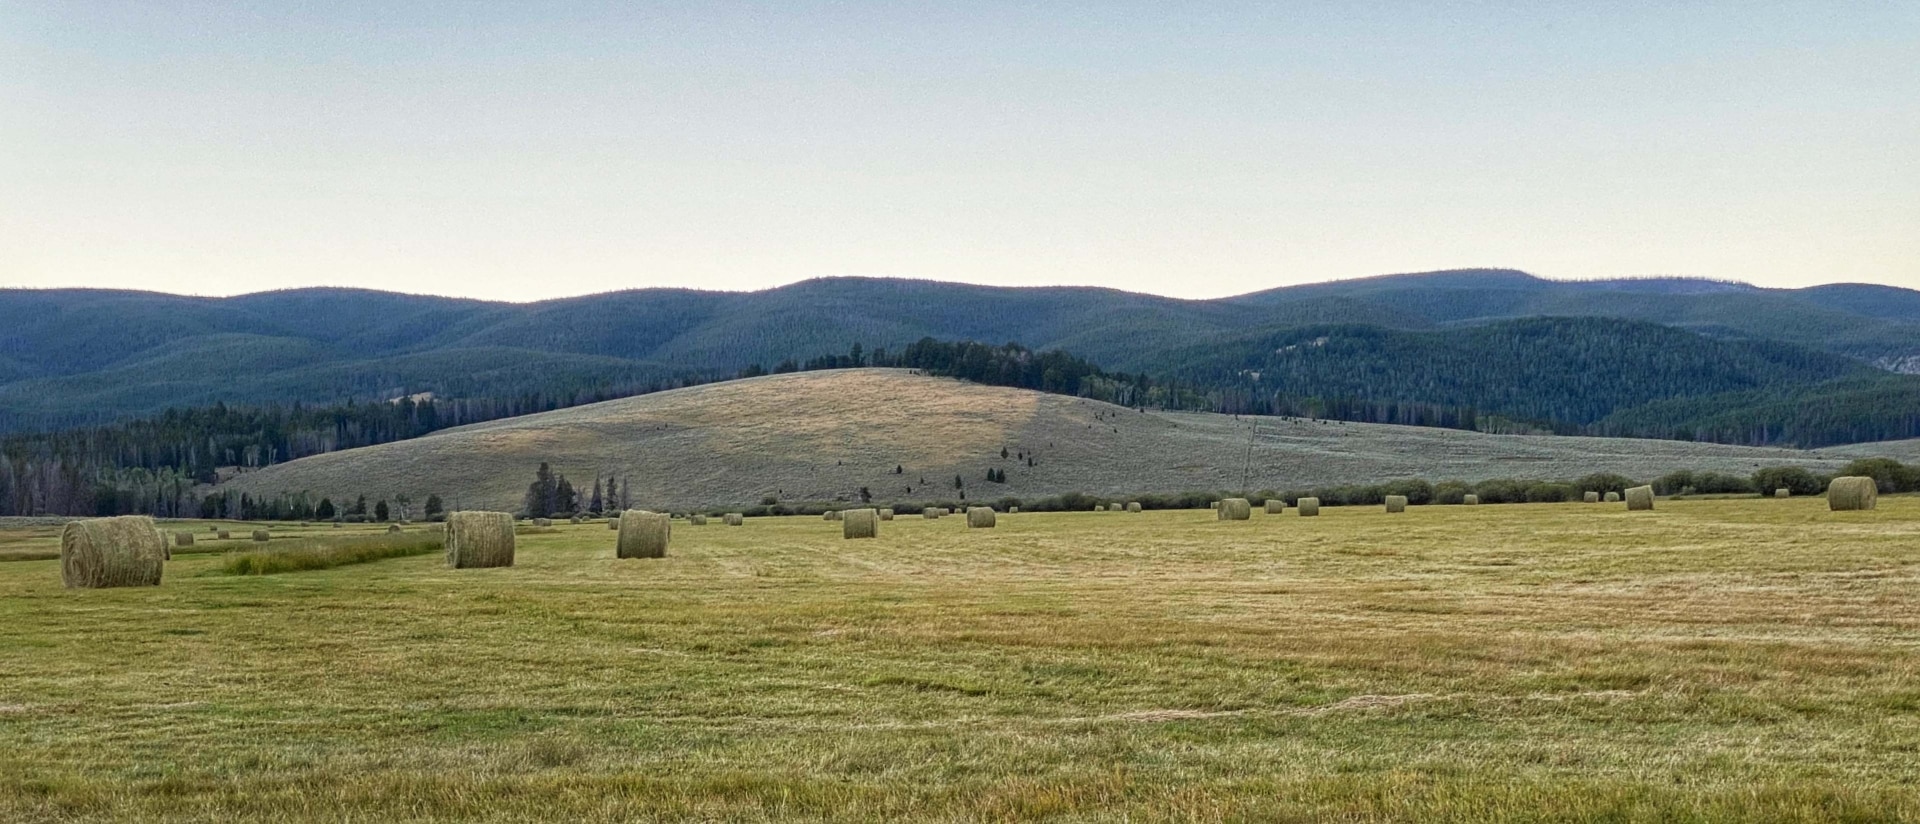 farms for sale montana arrow ranch